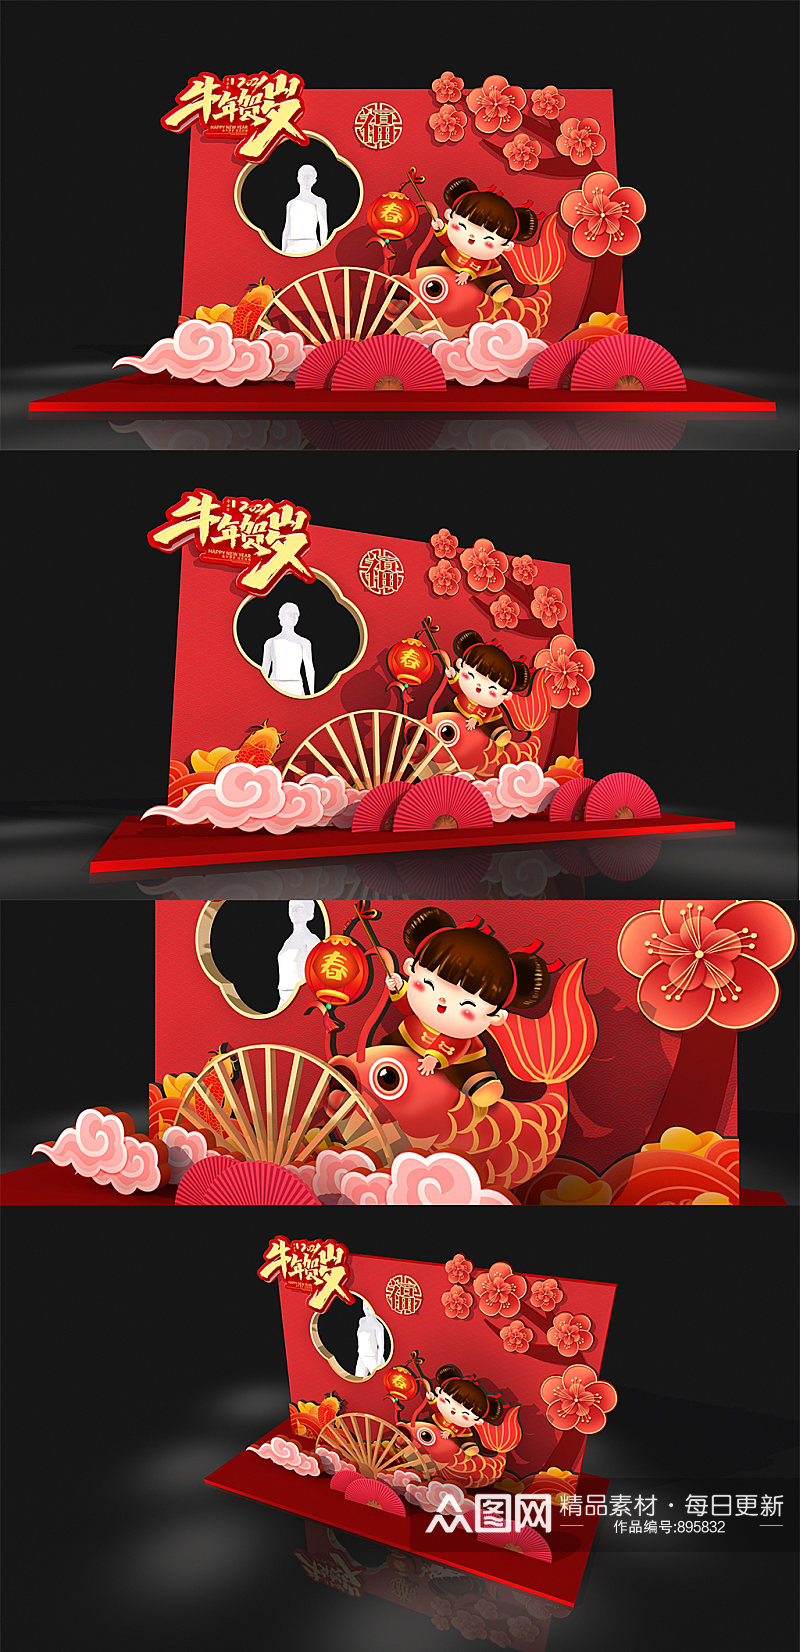 2021年牛年春节花卉喜庆食堂新年拍照框 留影区美陈布置 网红拍照墙素材